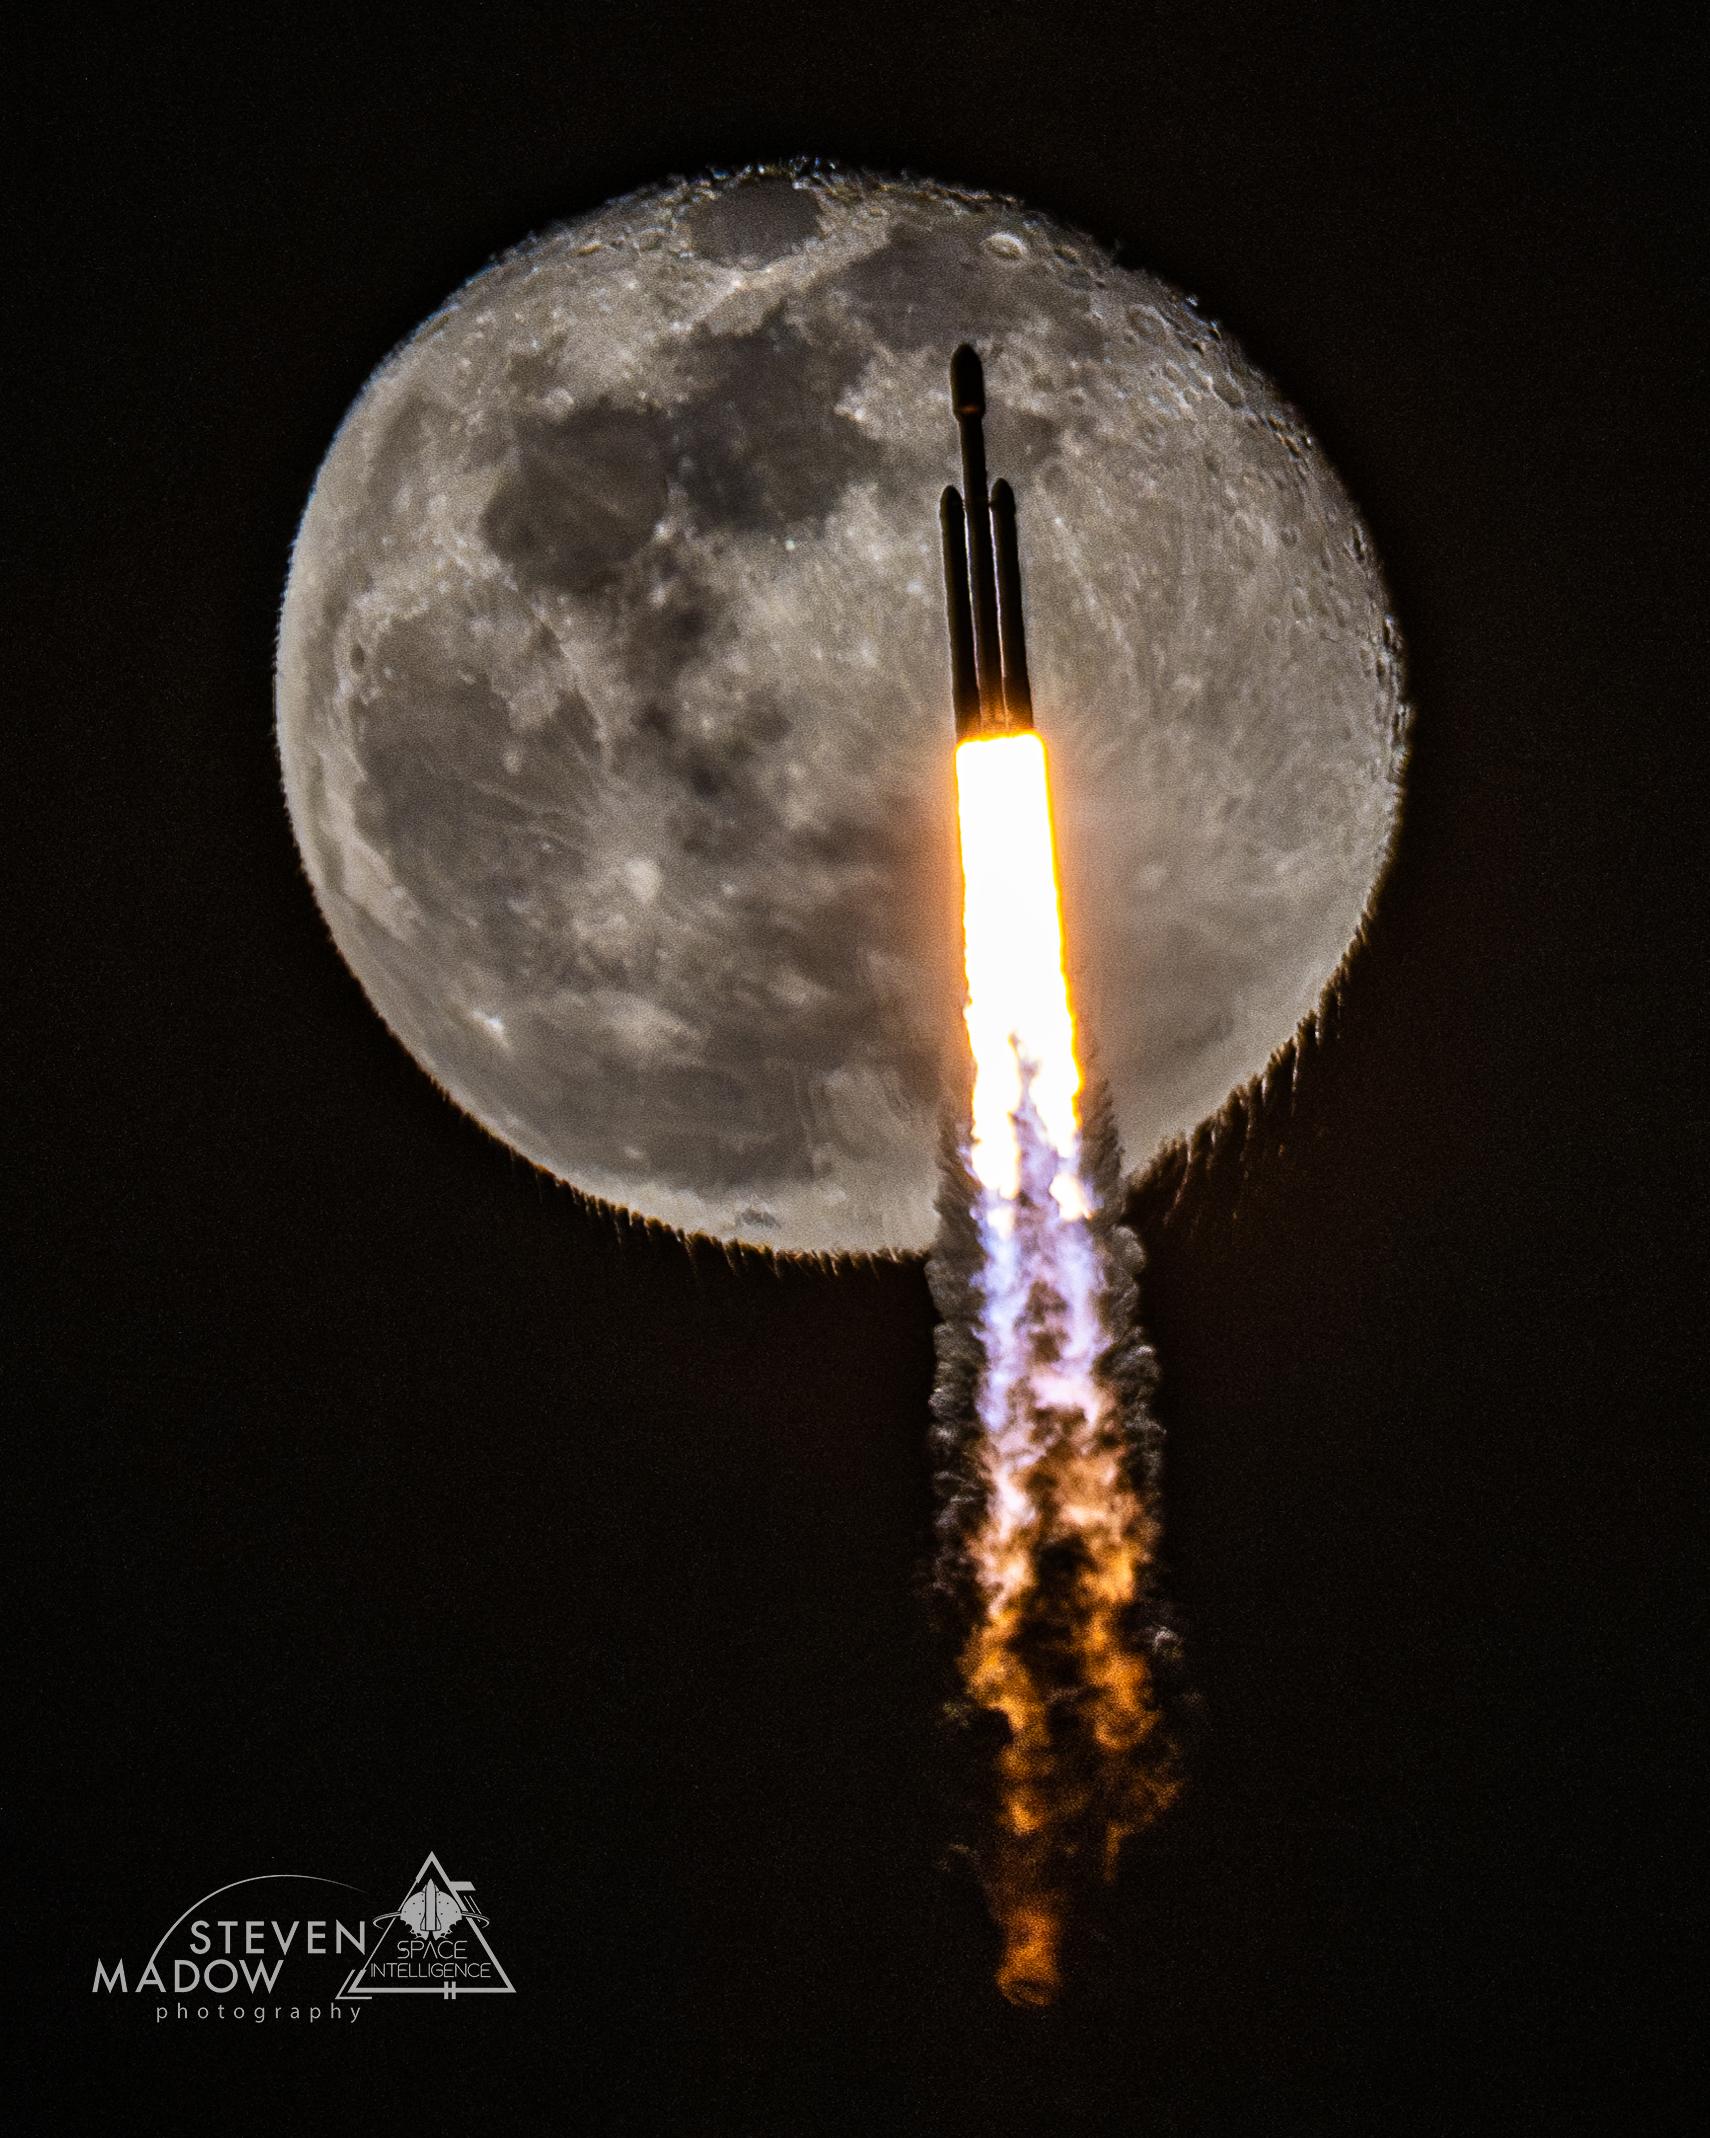 صاروخٌ آخذٌ بالصعود أثناء الإطلاق، وقمرٌ شبه مُحتملٍ خلفه. يسبّب عادم الصاروخ، المرئيّ بحدّ ذاته، أن يبدو أسفل القمر متموِّجاً على نحوٍ غير مُعتاد.